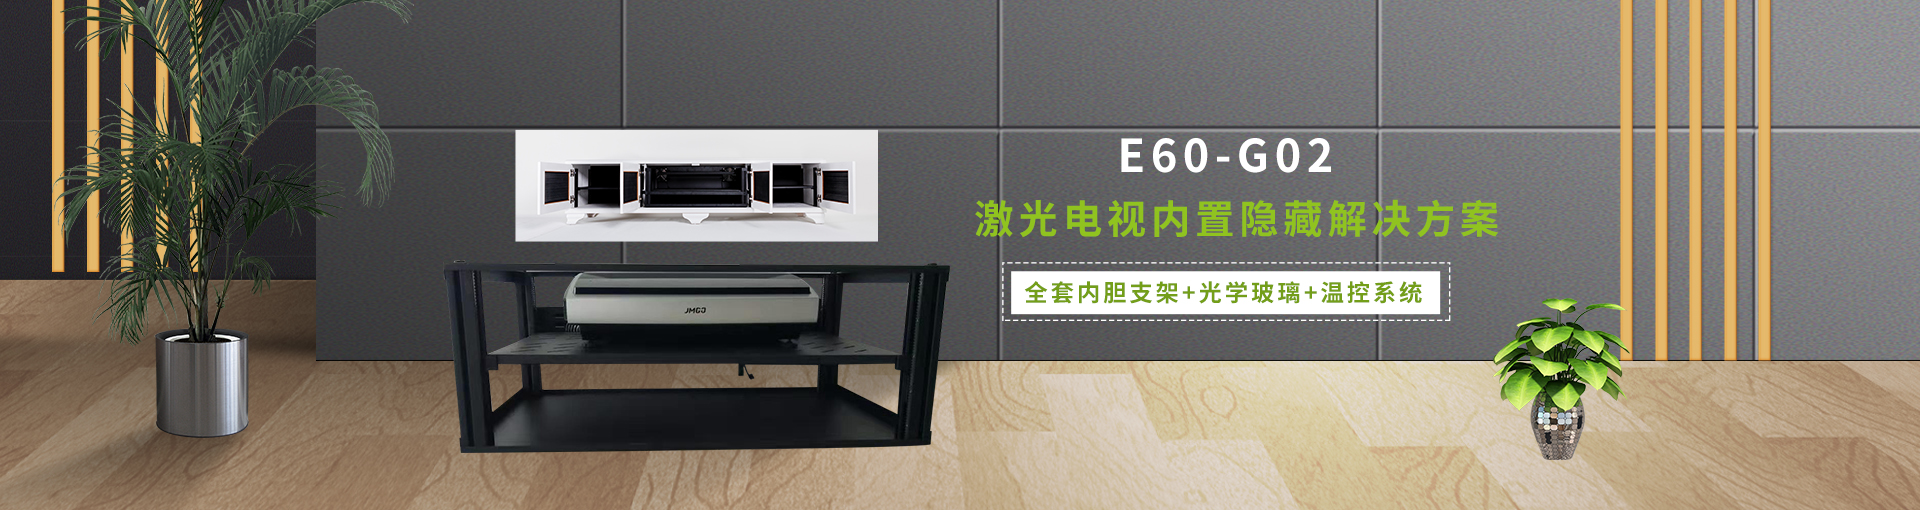 E-JOIN猛犸机柜激光电视激光电视安置解决方案柜E60-G02内胆全套激光电视电视柜定制 星空黑 800*303*450mm